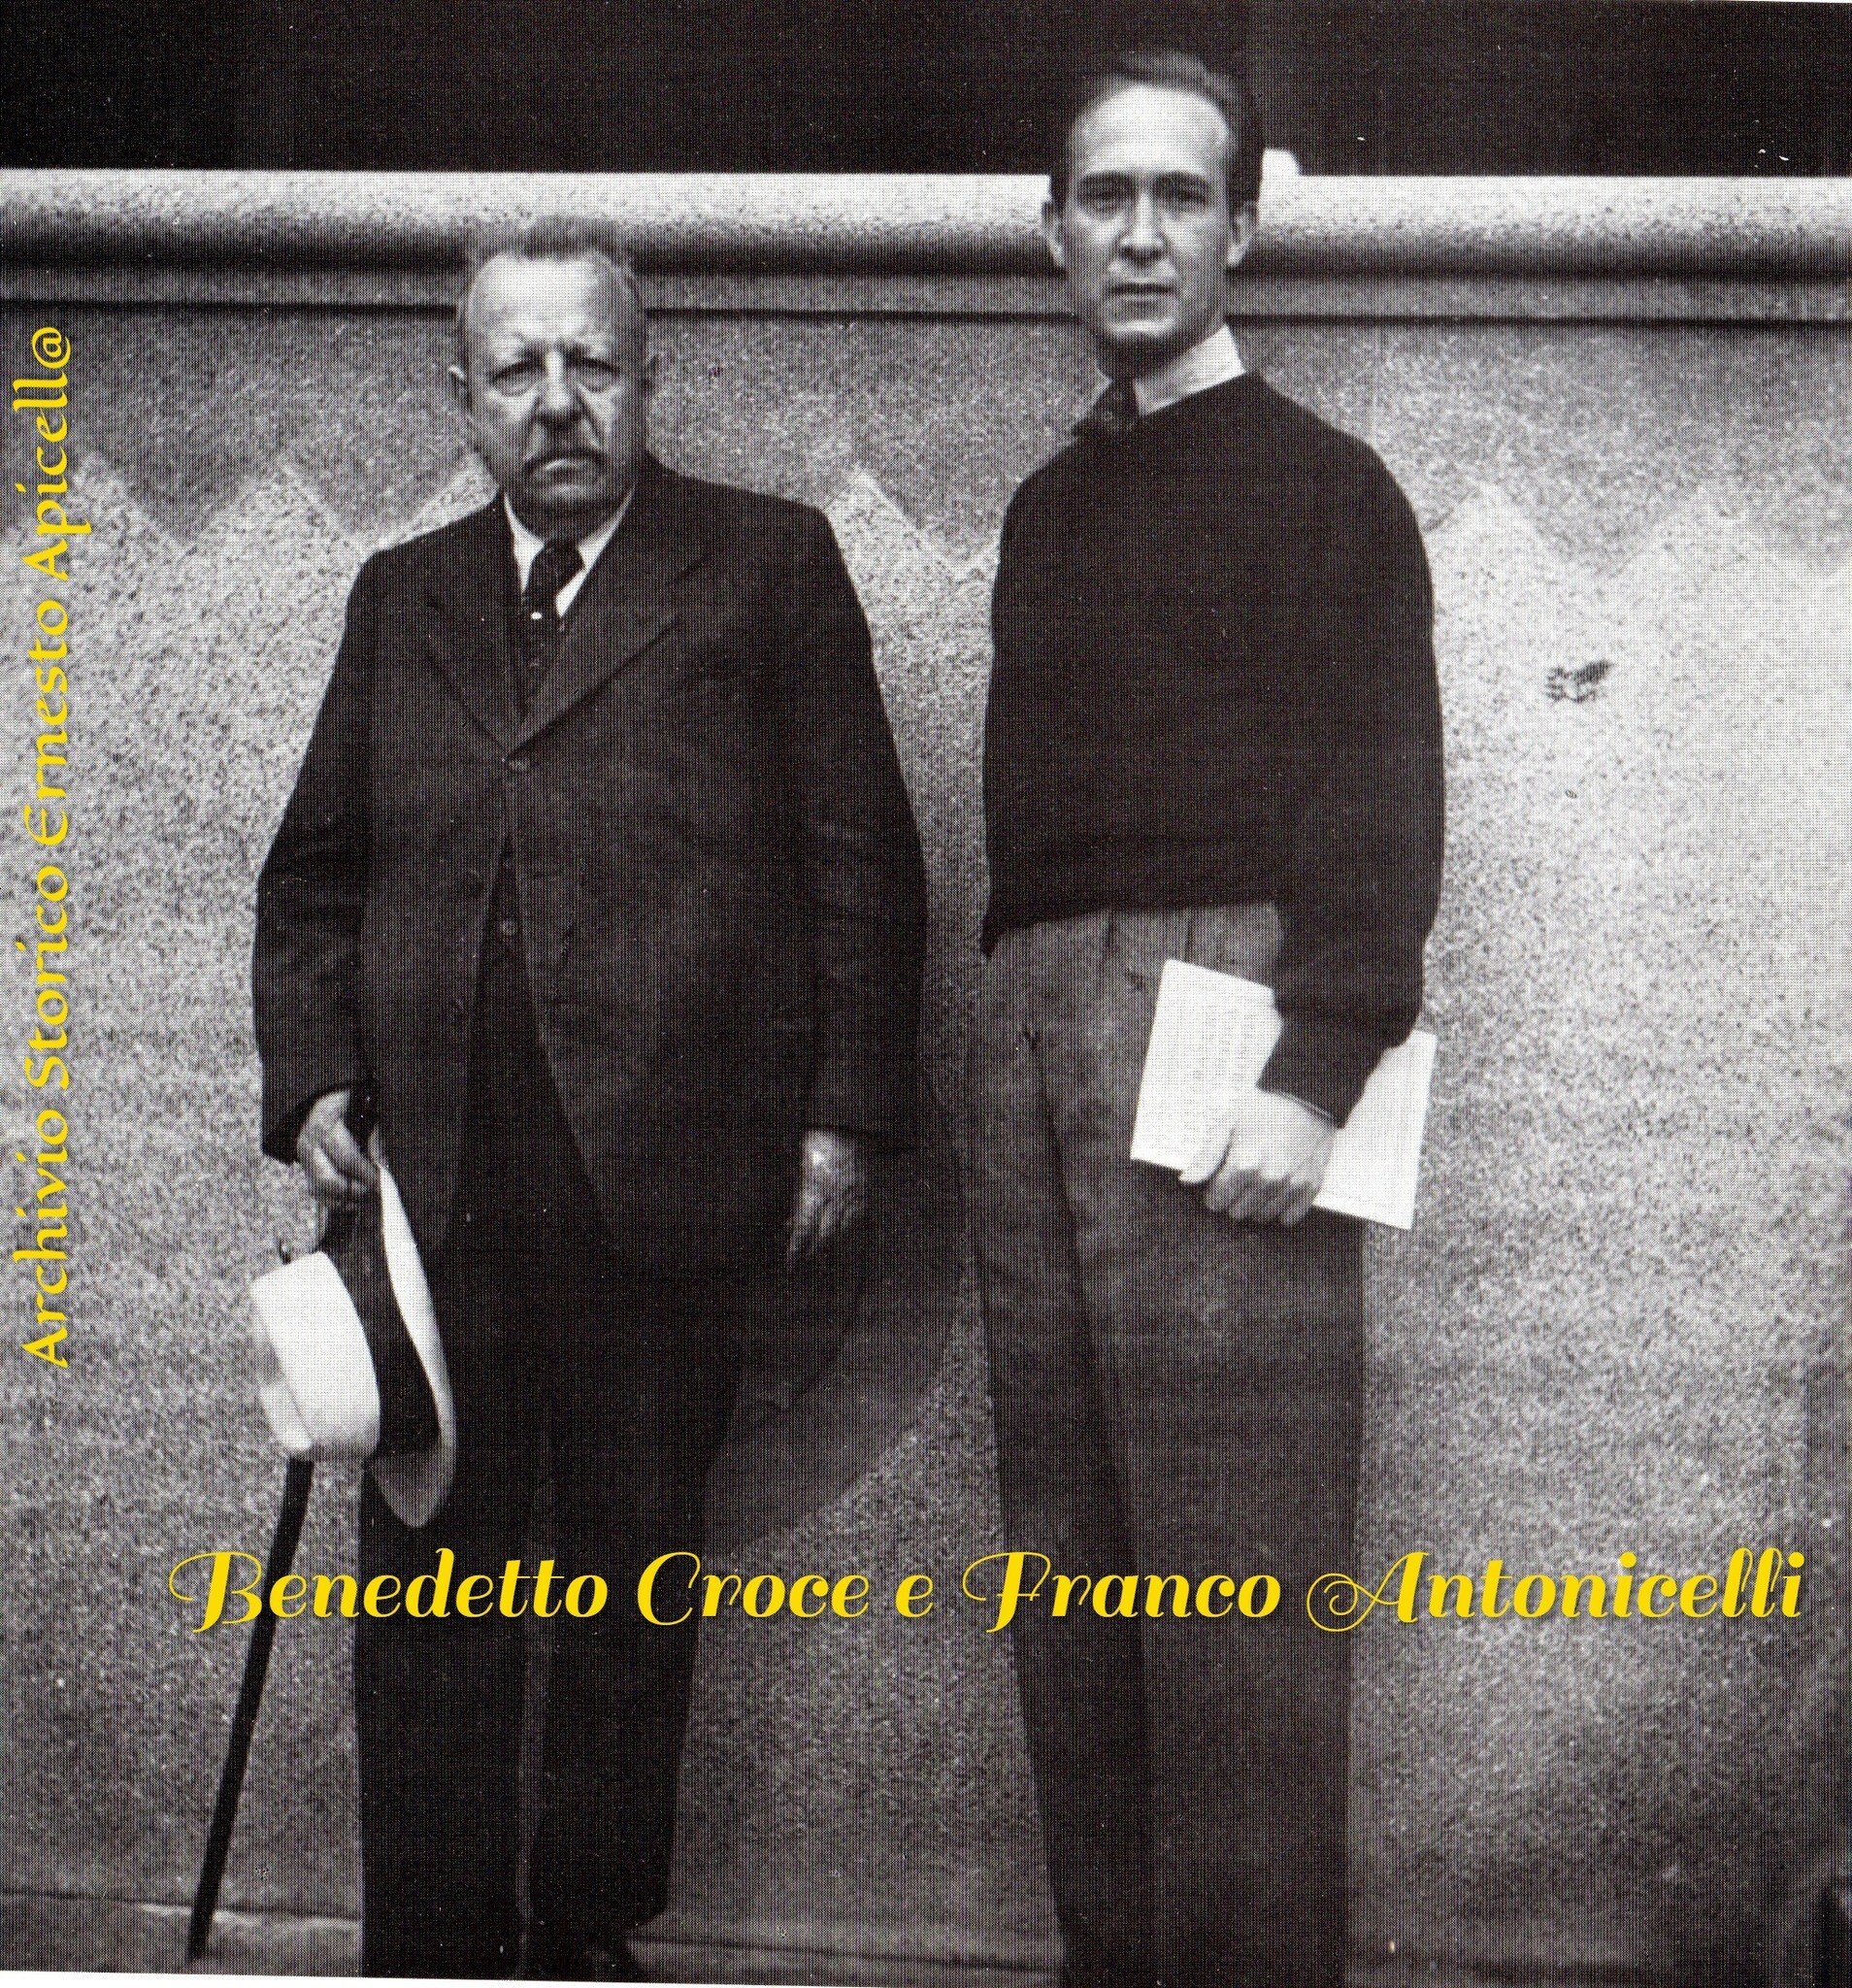 Benedetto Croce e Franco Antonicelli